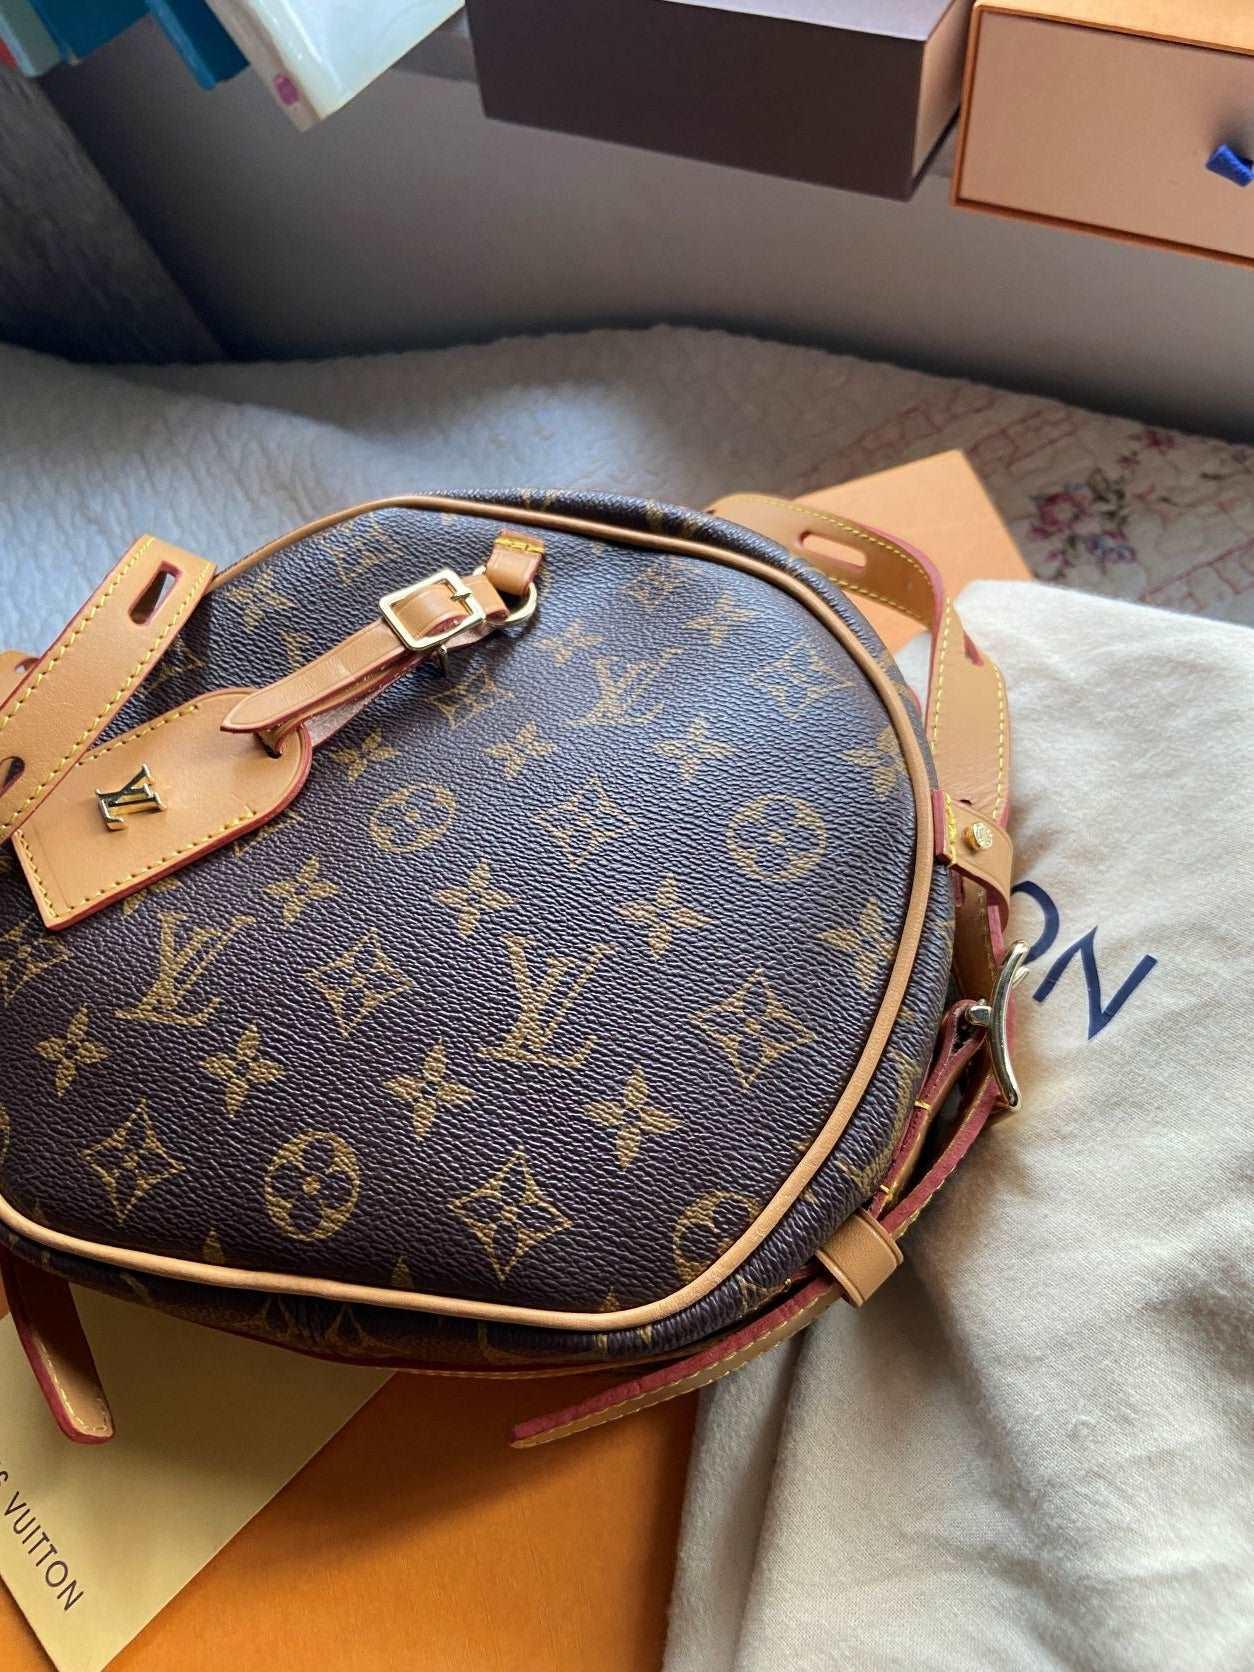 Lous Vuitton BOITE CHAPEAU SOUPLE Mm Handbag LVV - Tracesilver